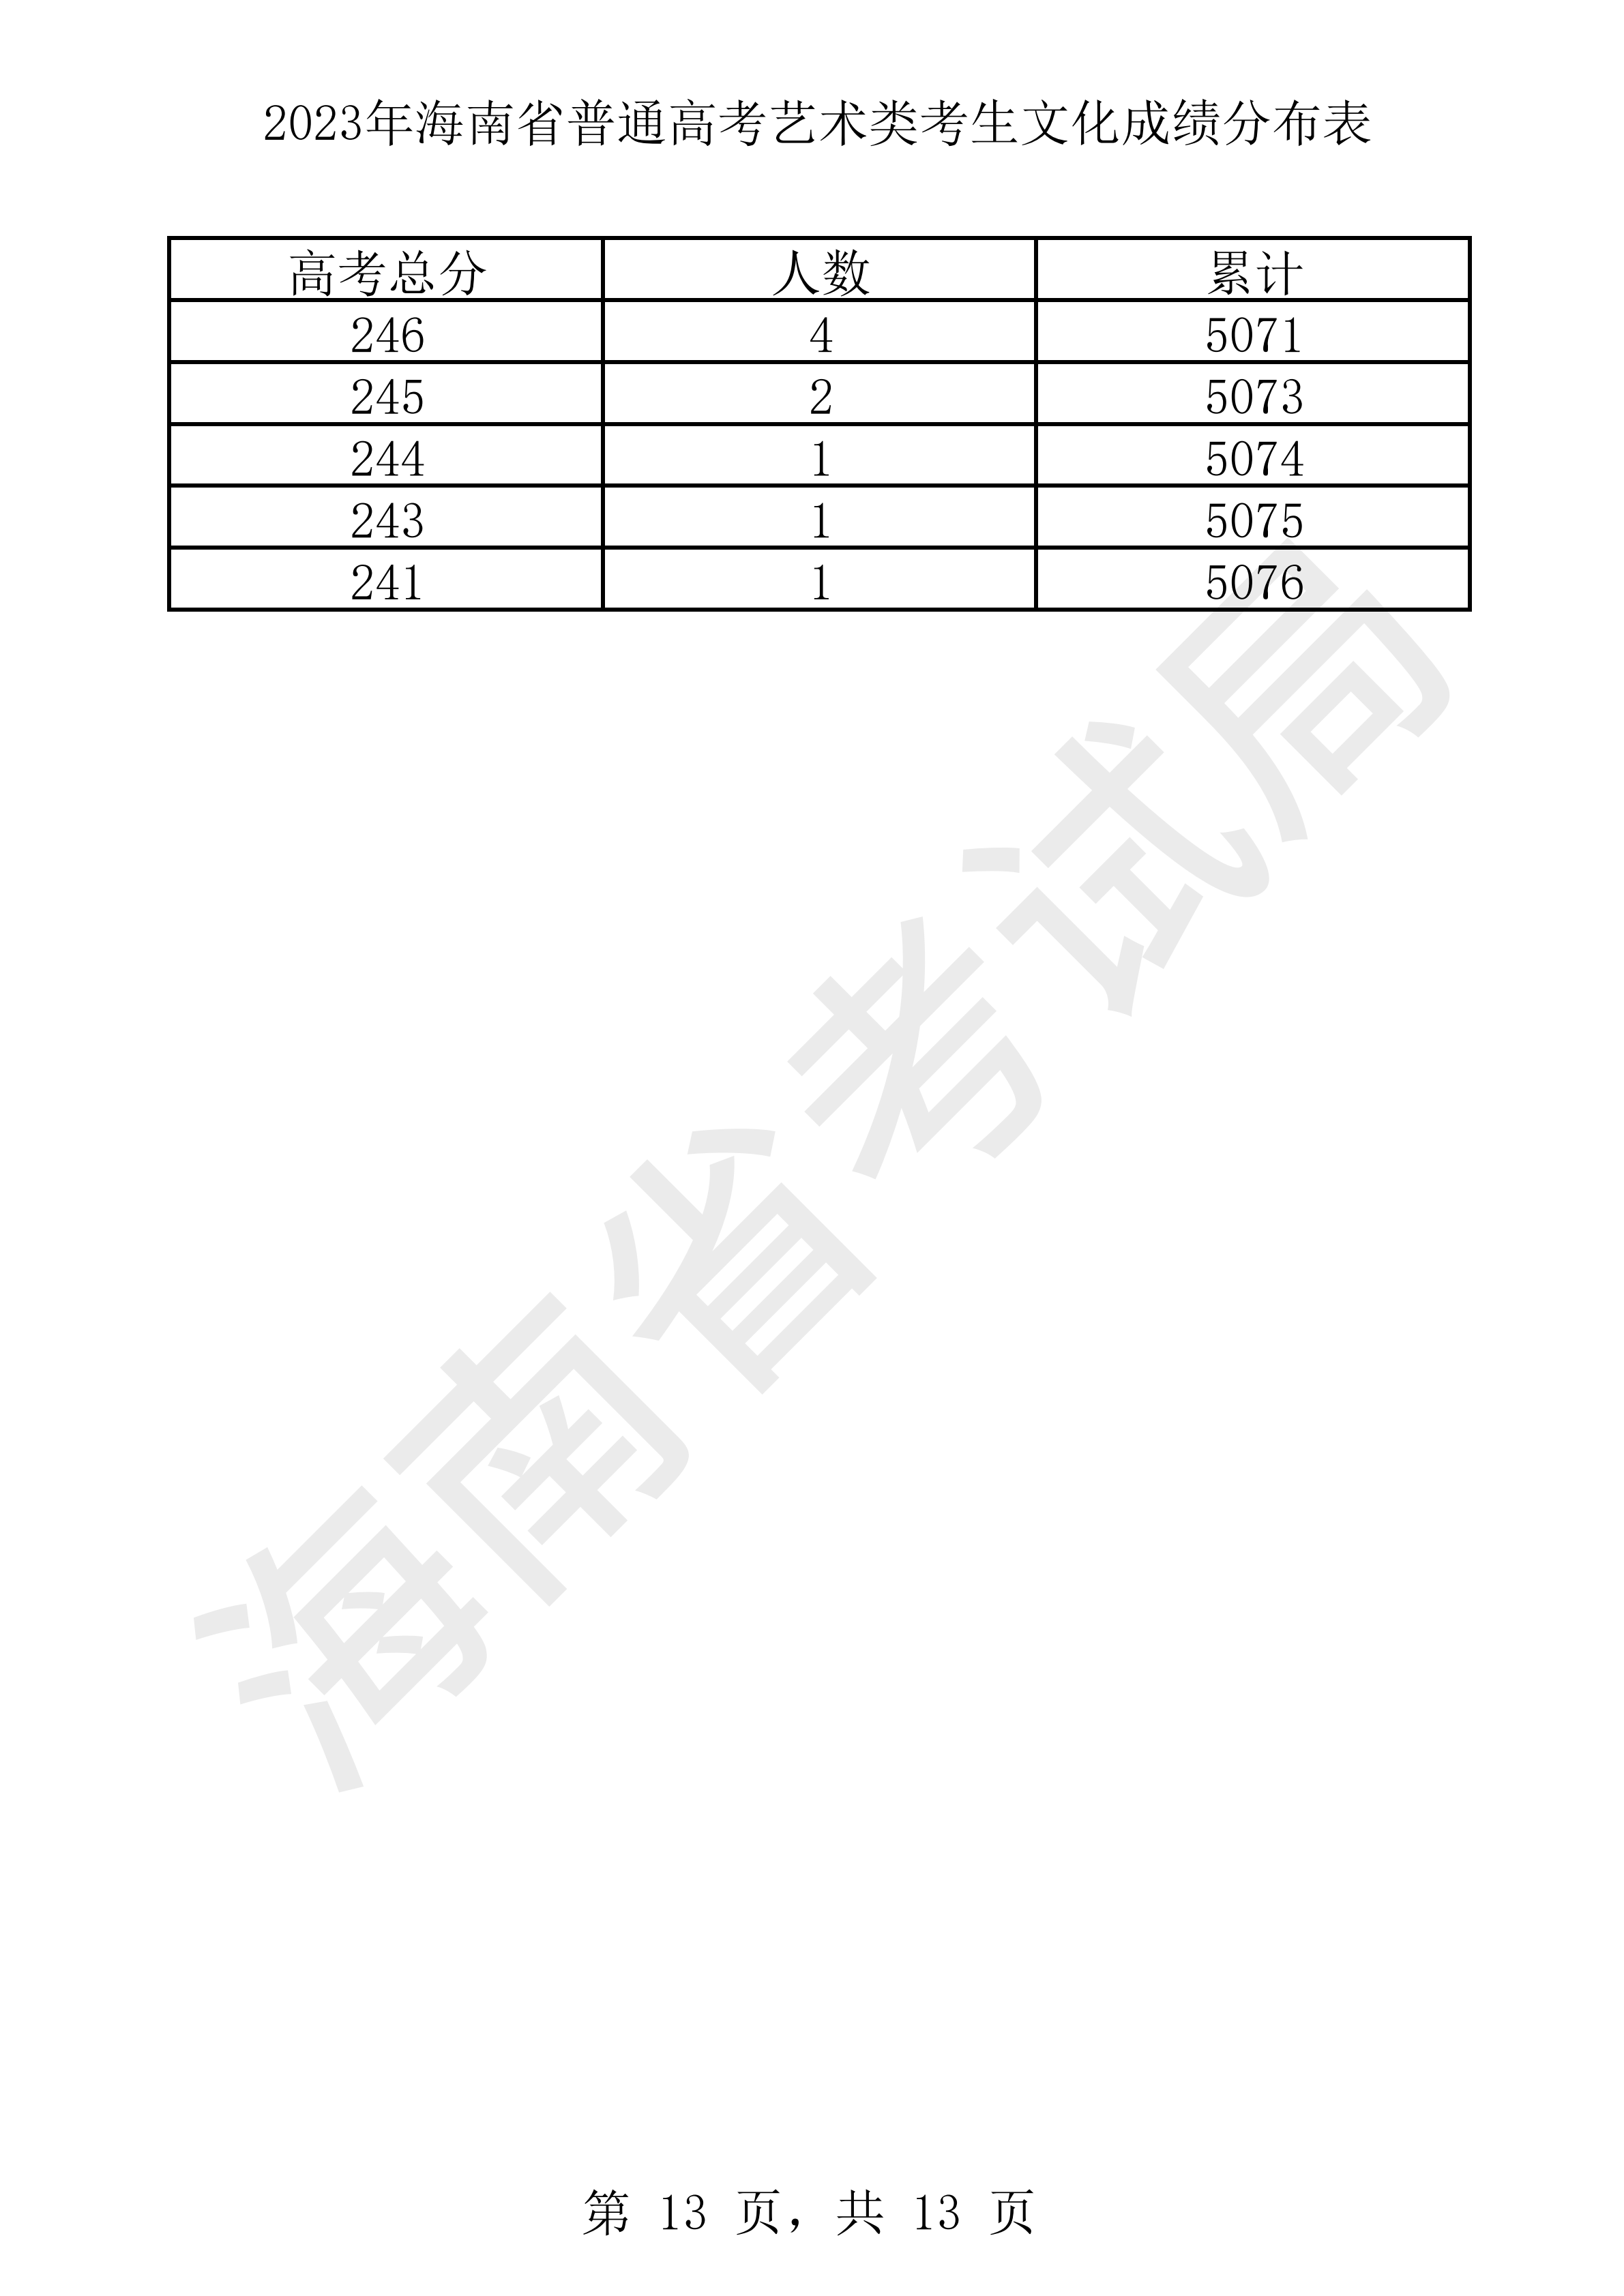 2023年海南省普通高考藝術類考生文化成績分布表 